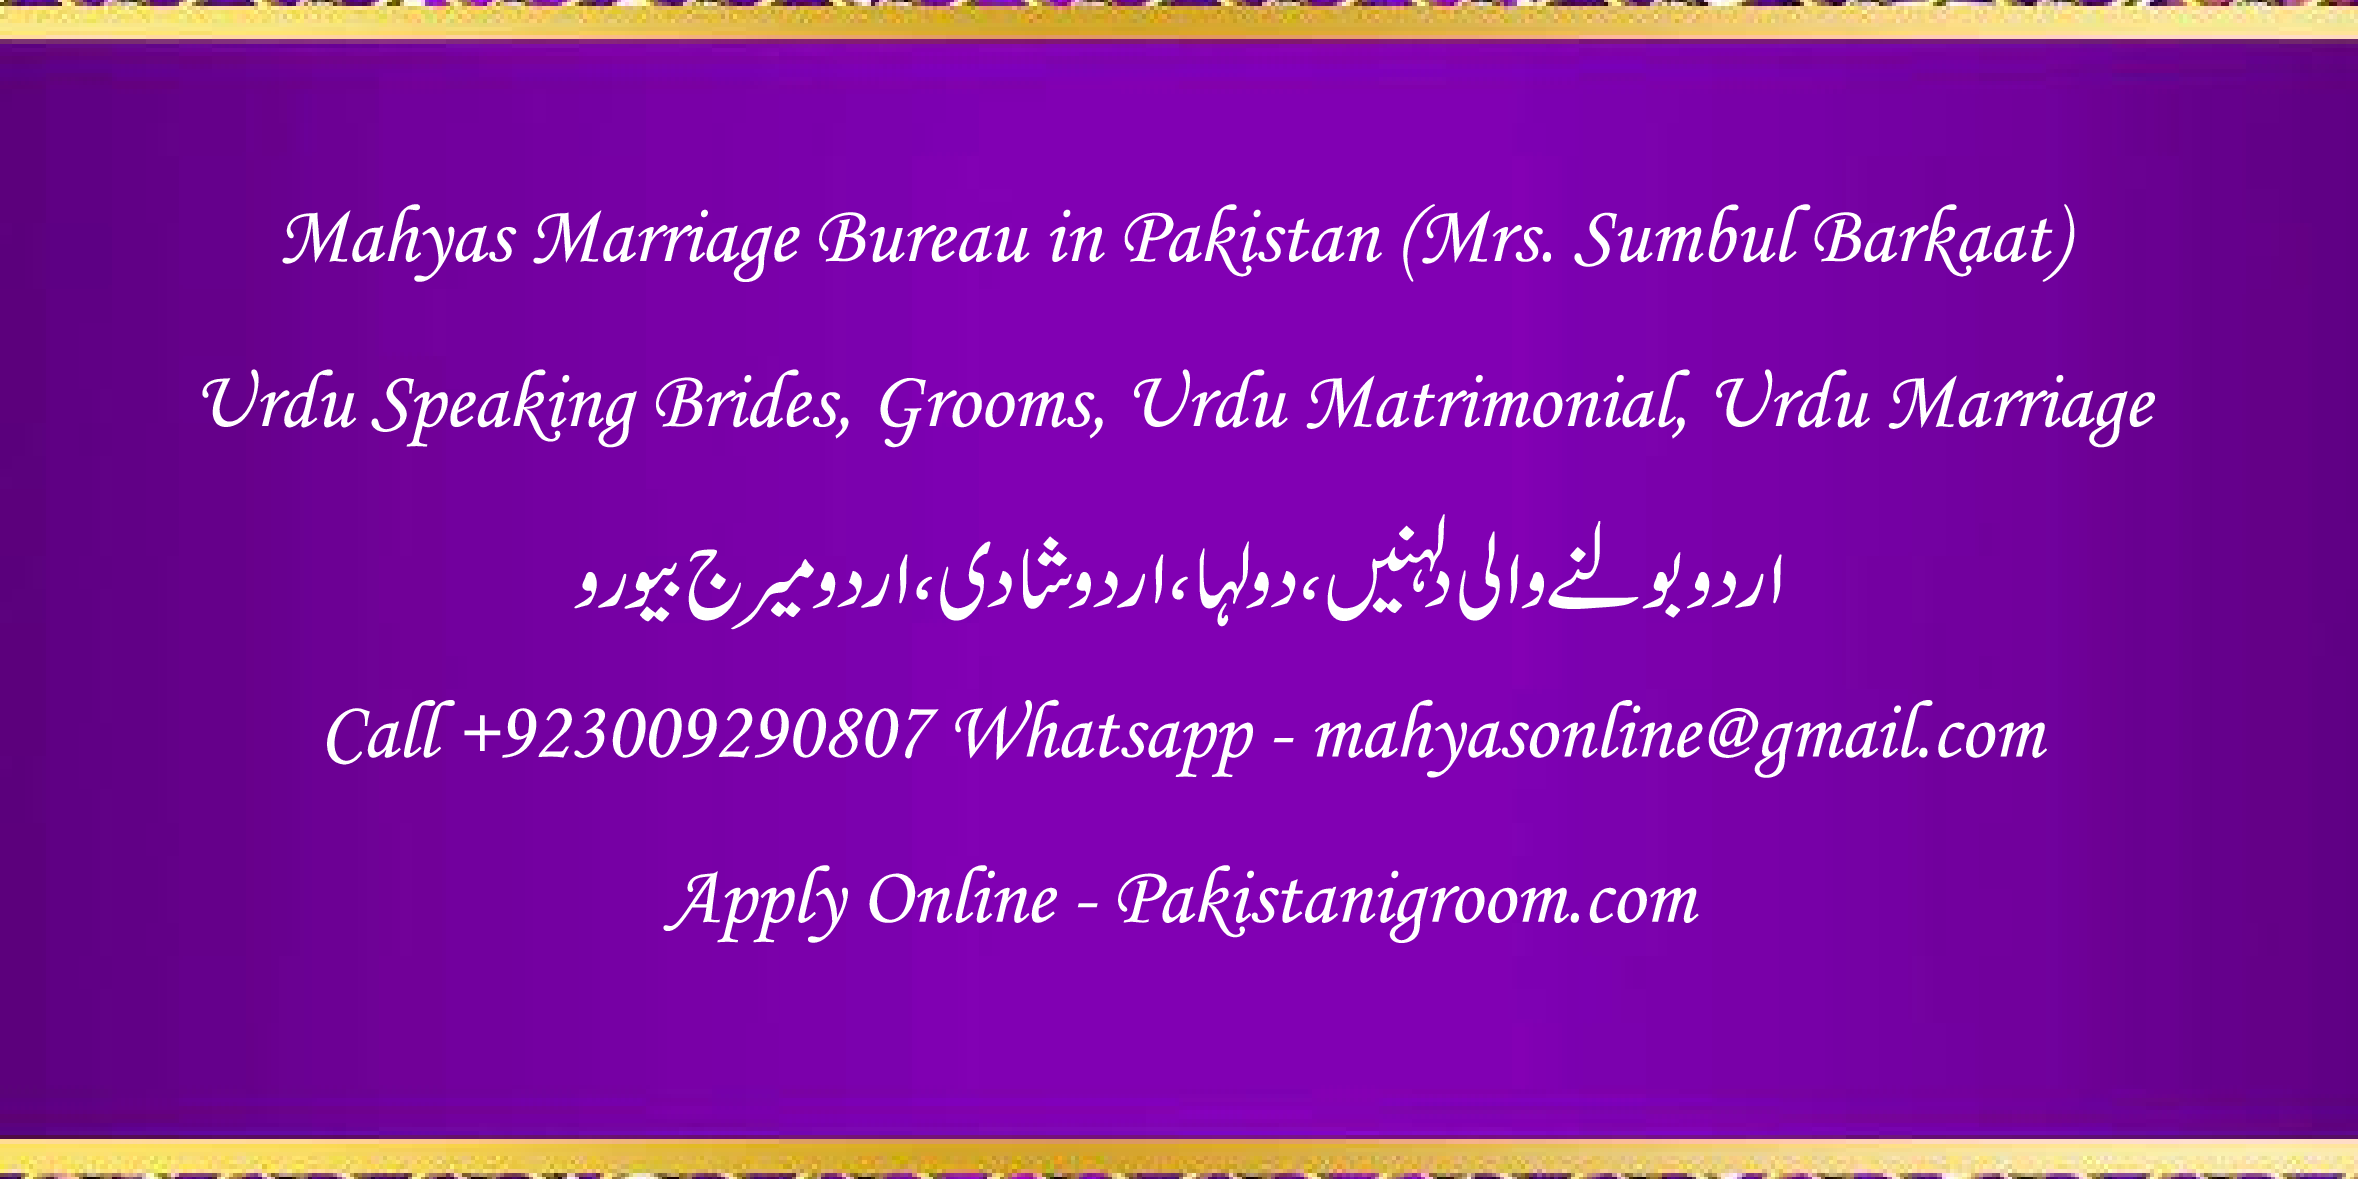 Mahyas-marriage-bureau-Karachi-Pakistan-for-Shia-Sunni-Remarriage-Divorce-Widow-Second-marriage-Punjabi-Pashto-Urdu-17.png